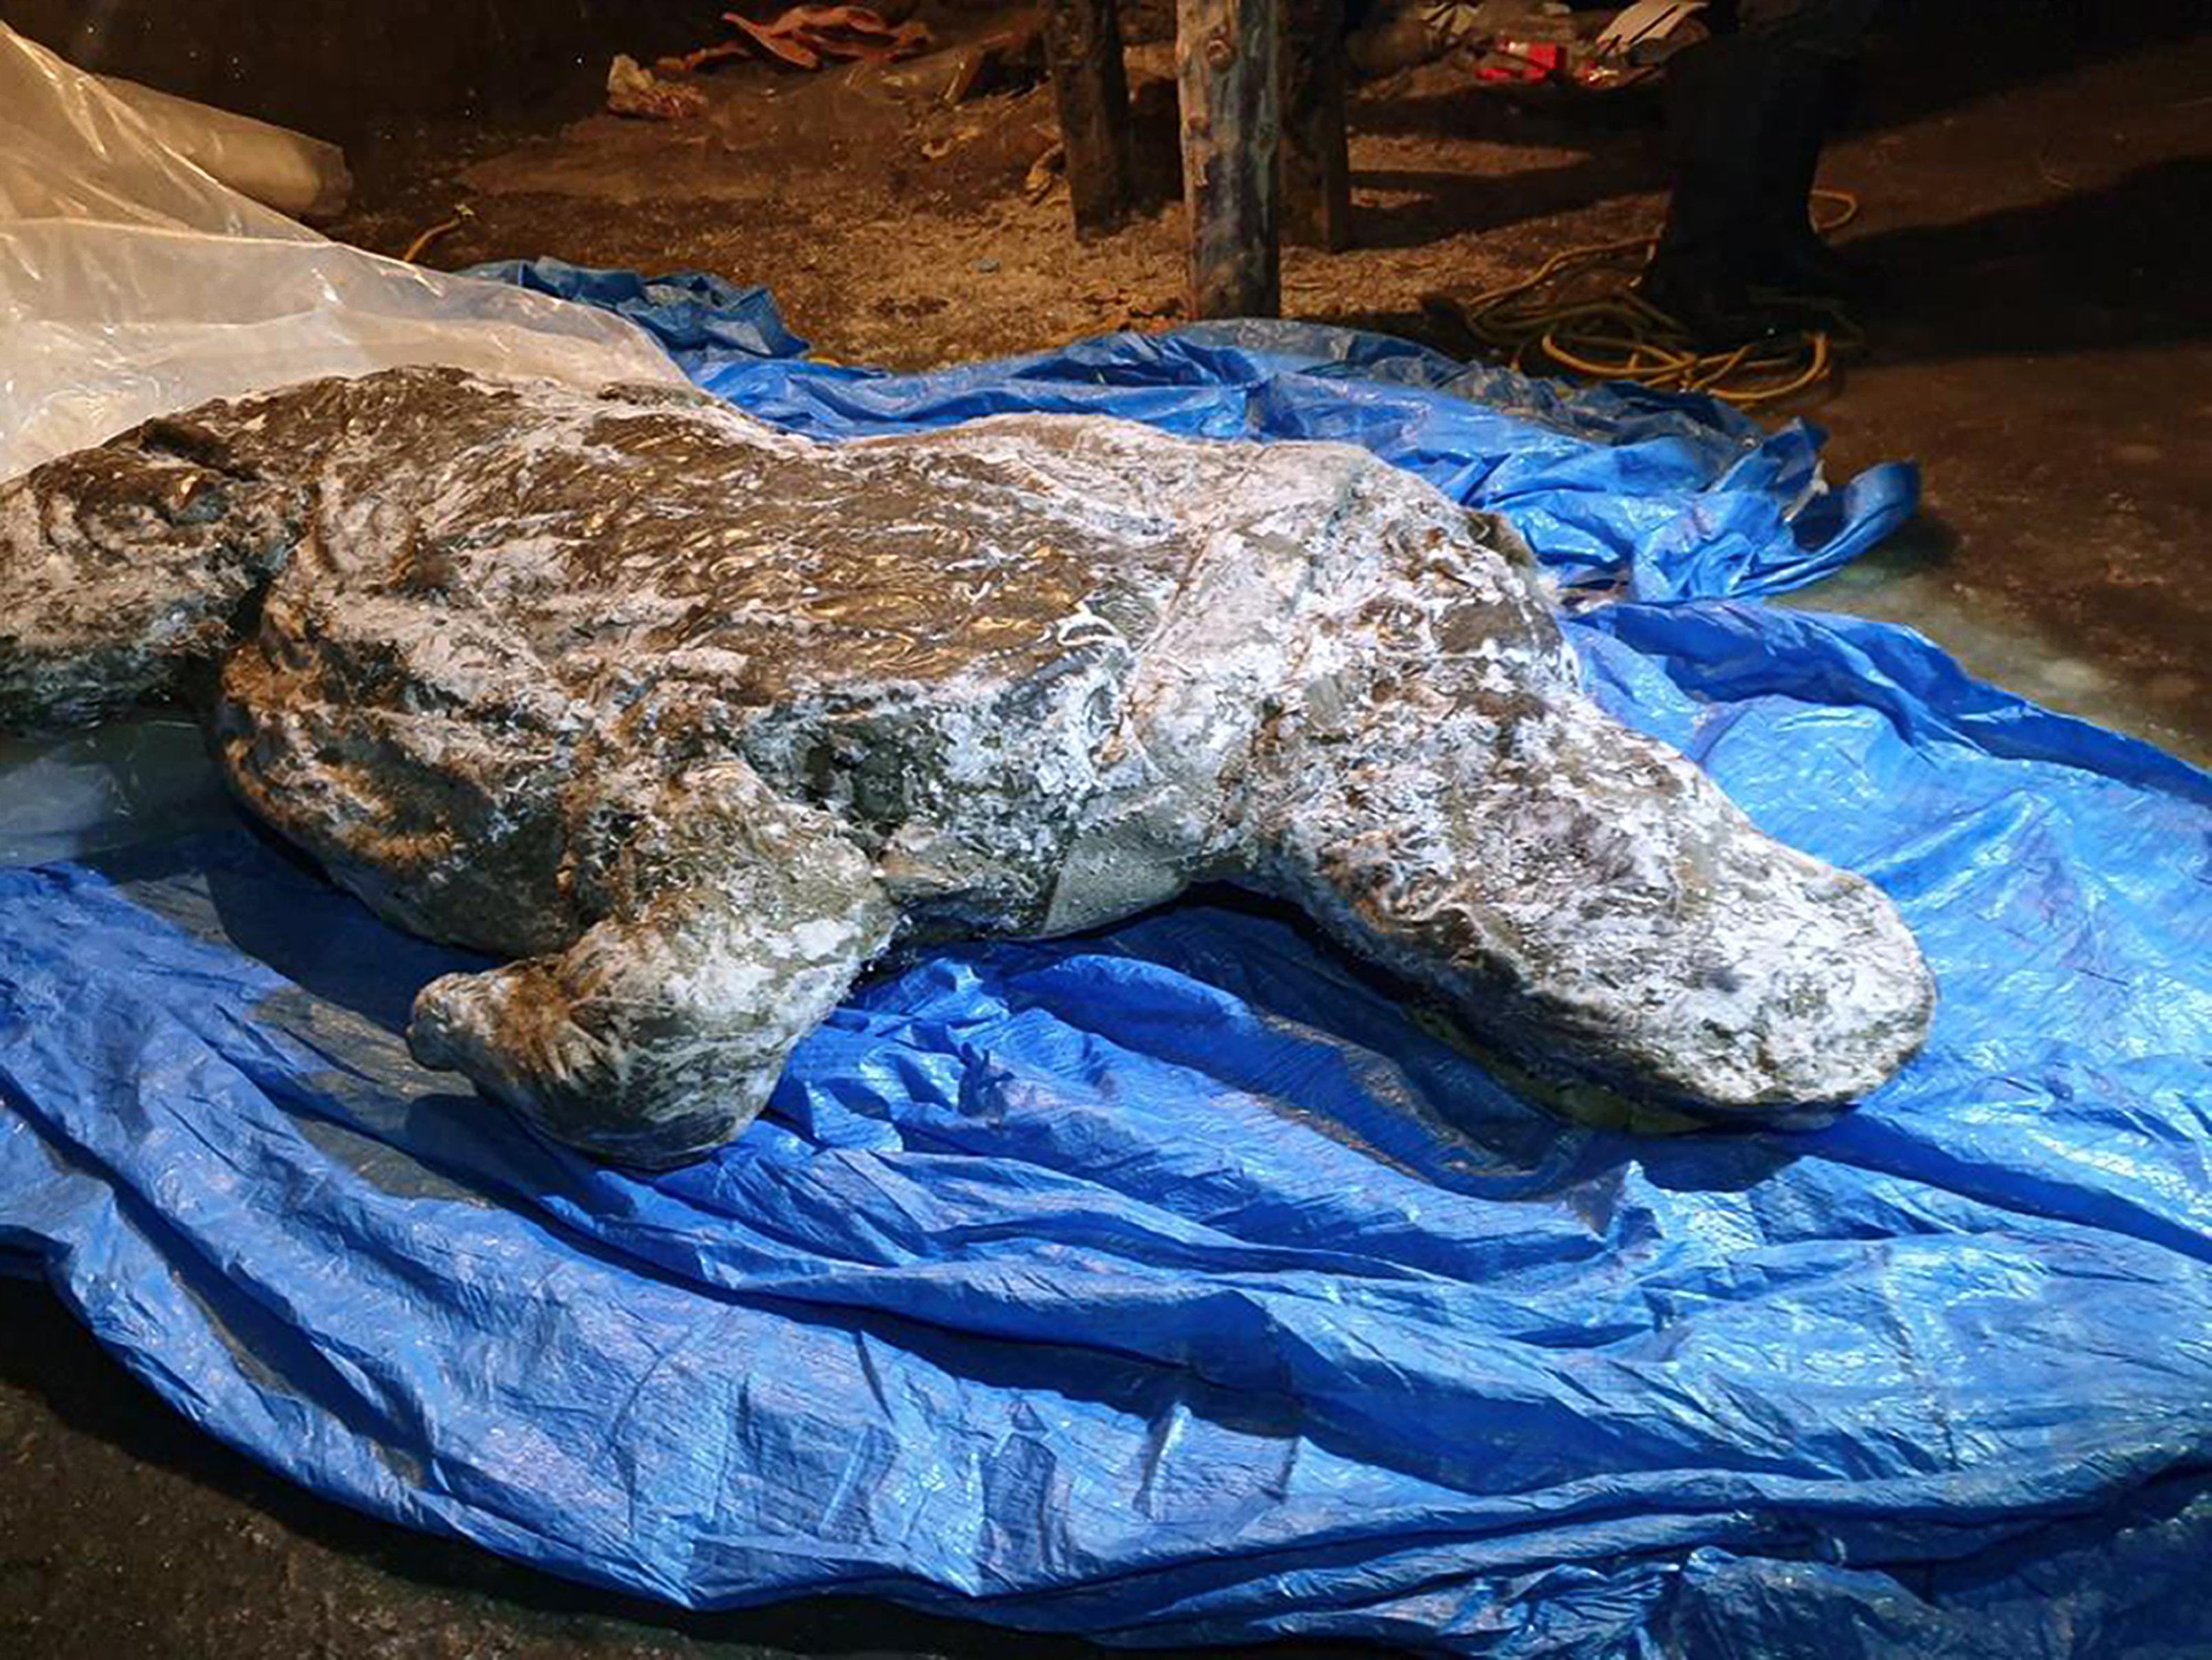 Esta foto tomada en agosto de 2020 muestra el cadáver de un rinoceronte lanudo, tomada en Yakutia. (Valery Plotnikov / Departamento de estudios de fauna de mamut de la Academia de Ciencias de Yakutia a través de AP)